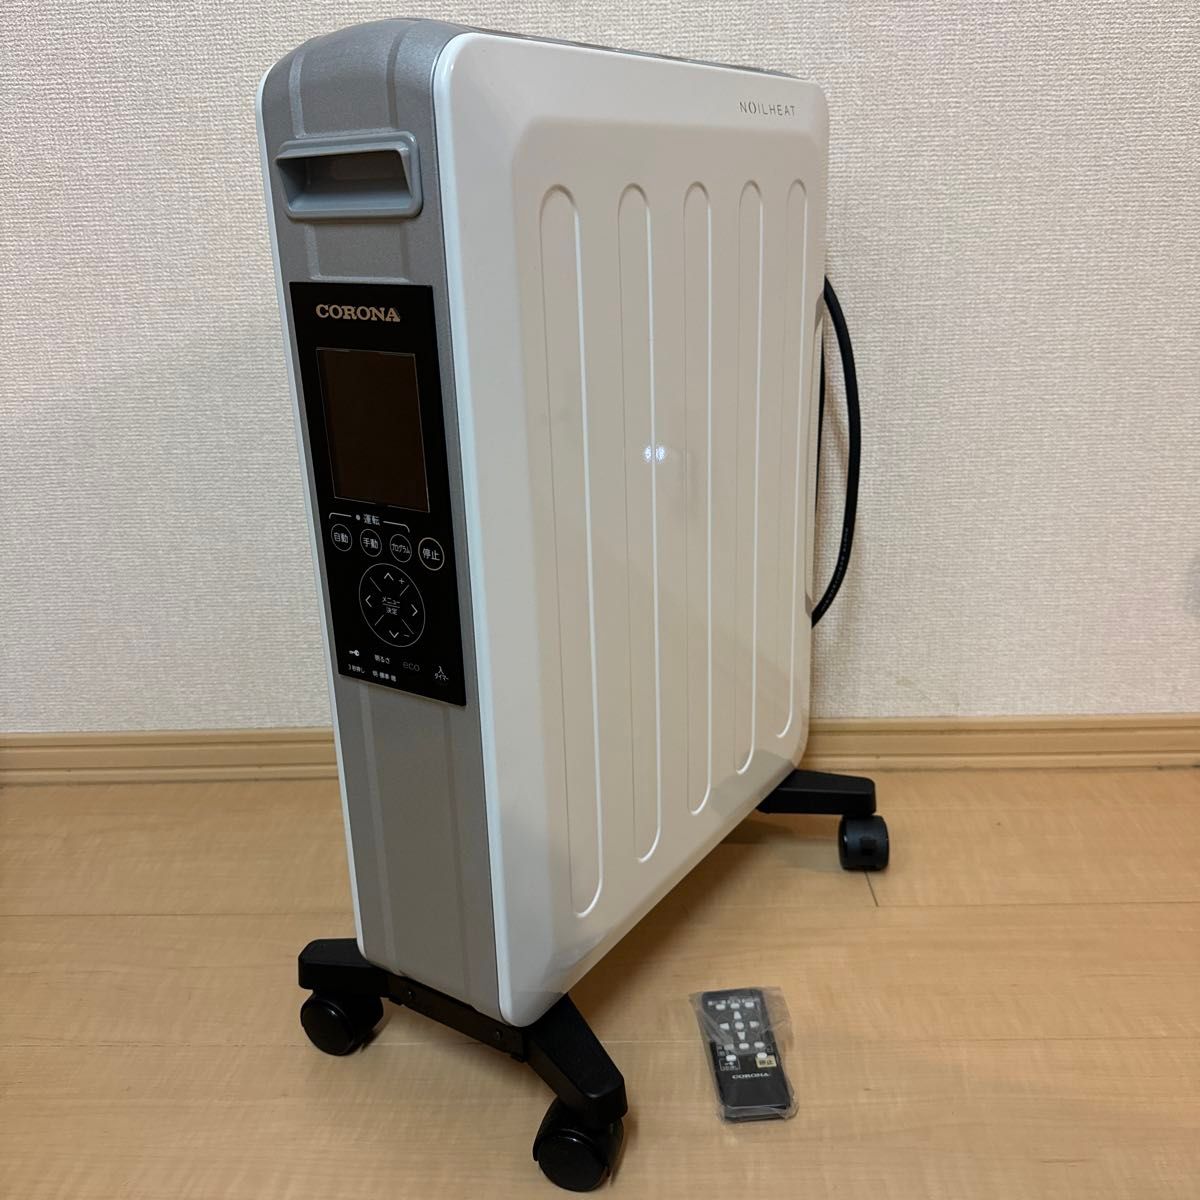 【美品】コロナ オイルレスヒーター ノイルヒート 自然対流形電気暖房機 CORONA DHS-1219